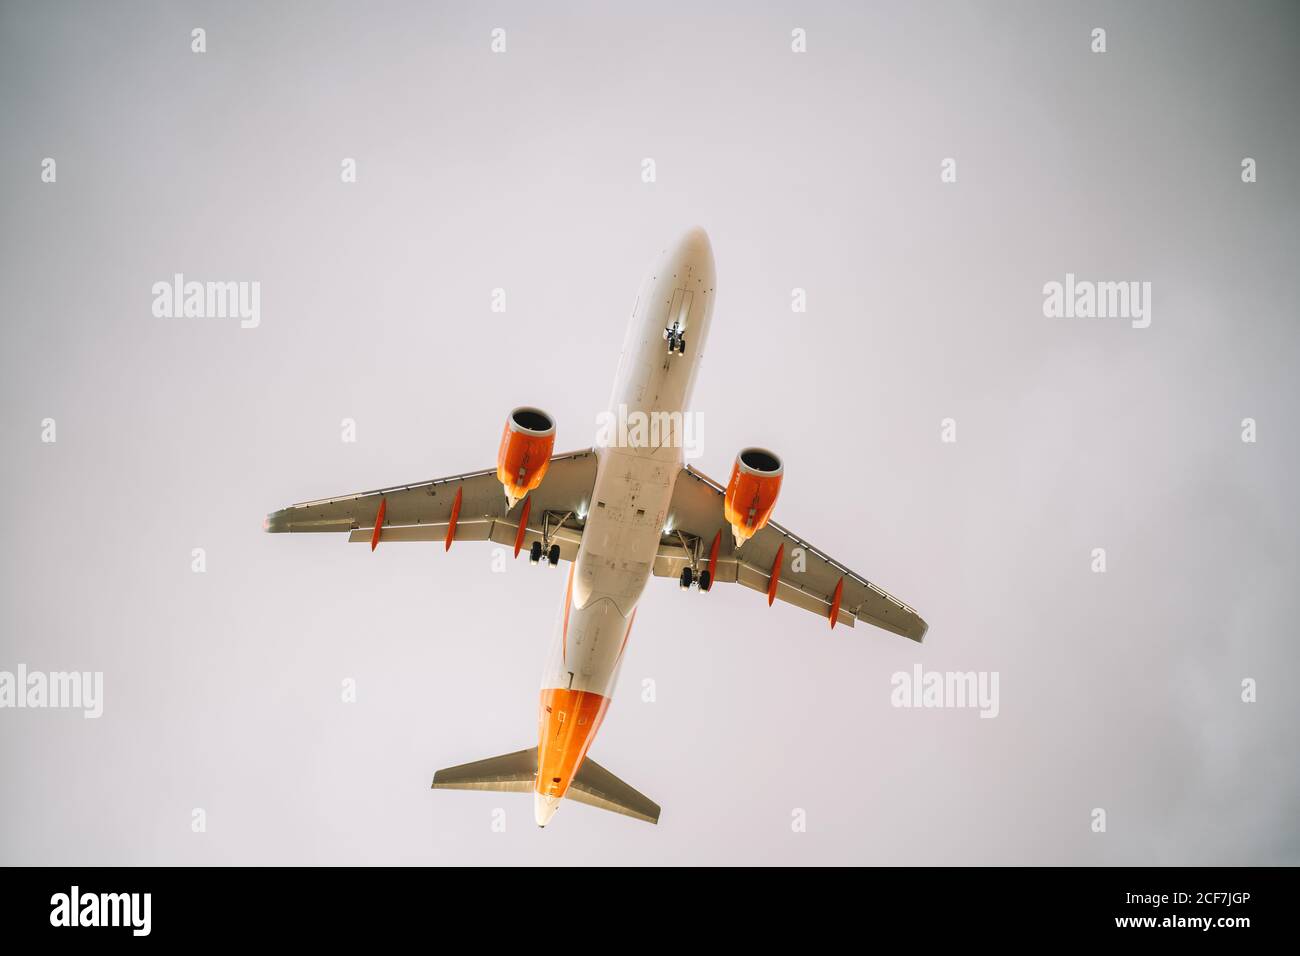 De dessous d'avion blanc et orange volant avec ciel nuageux ciel gris sur fond Banque D'Images